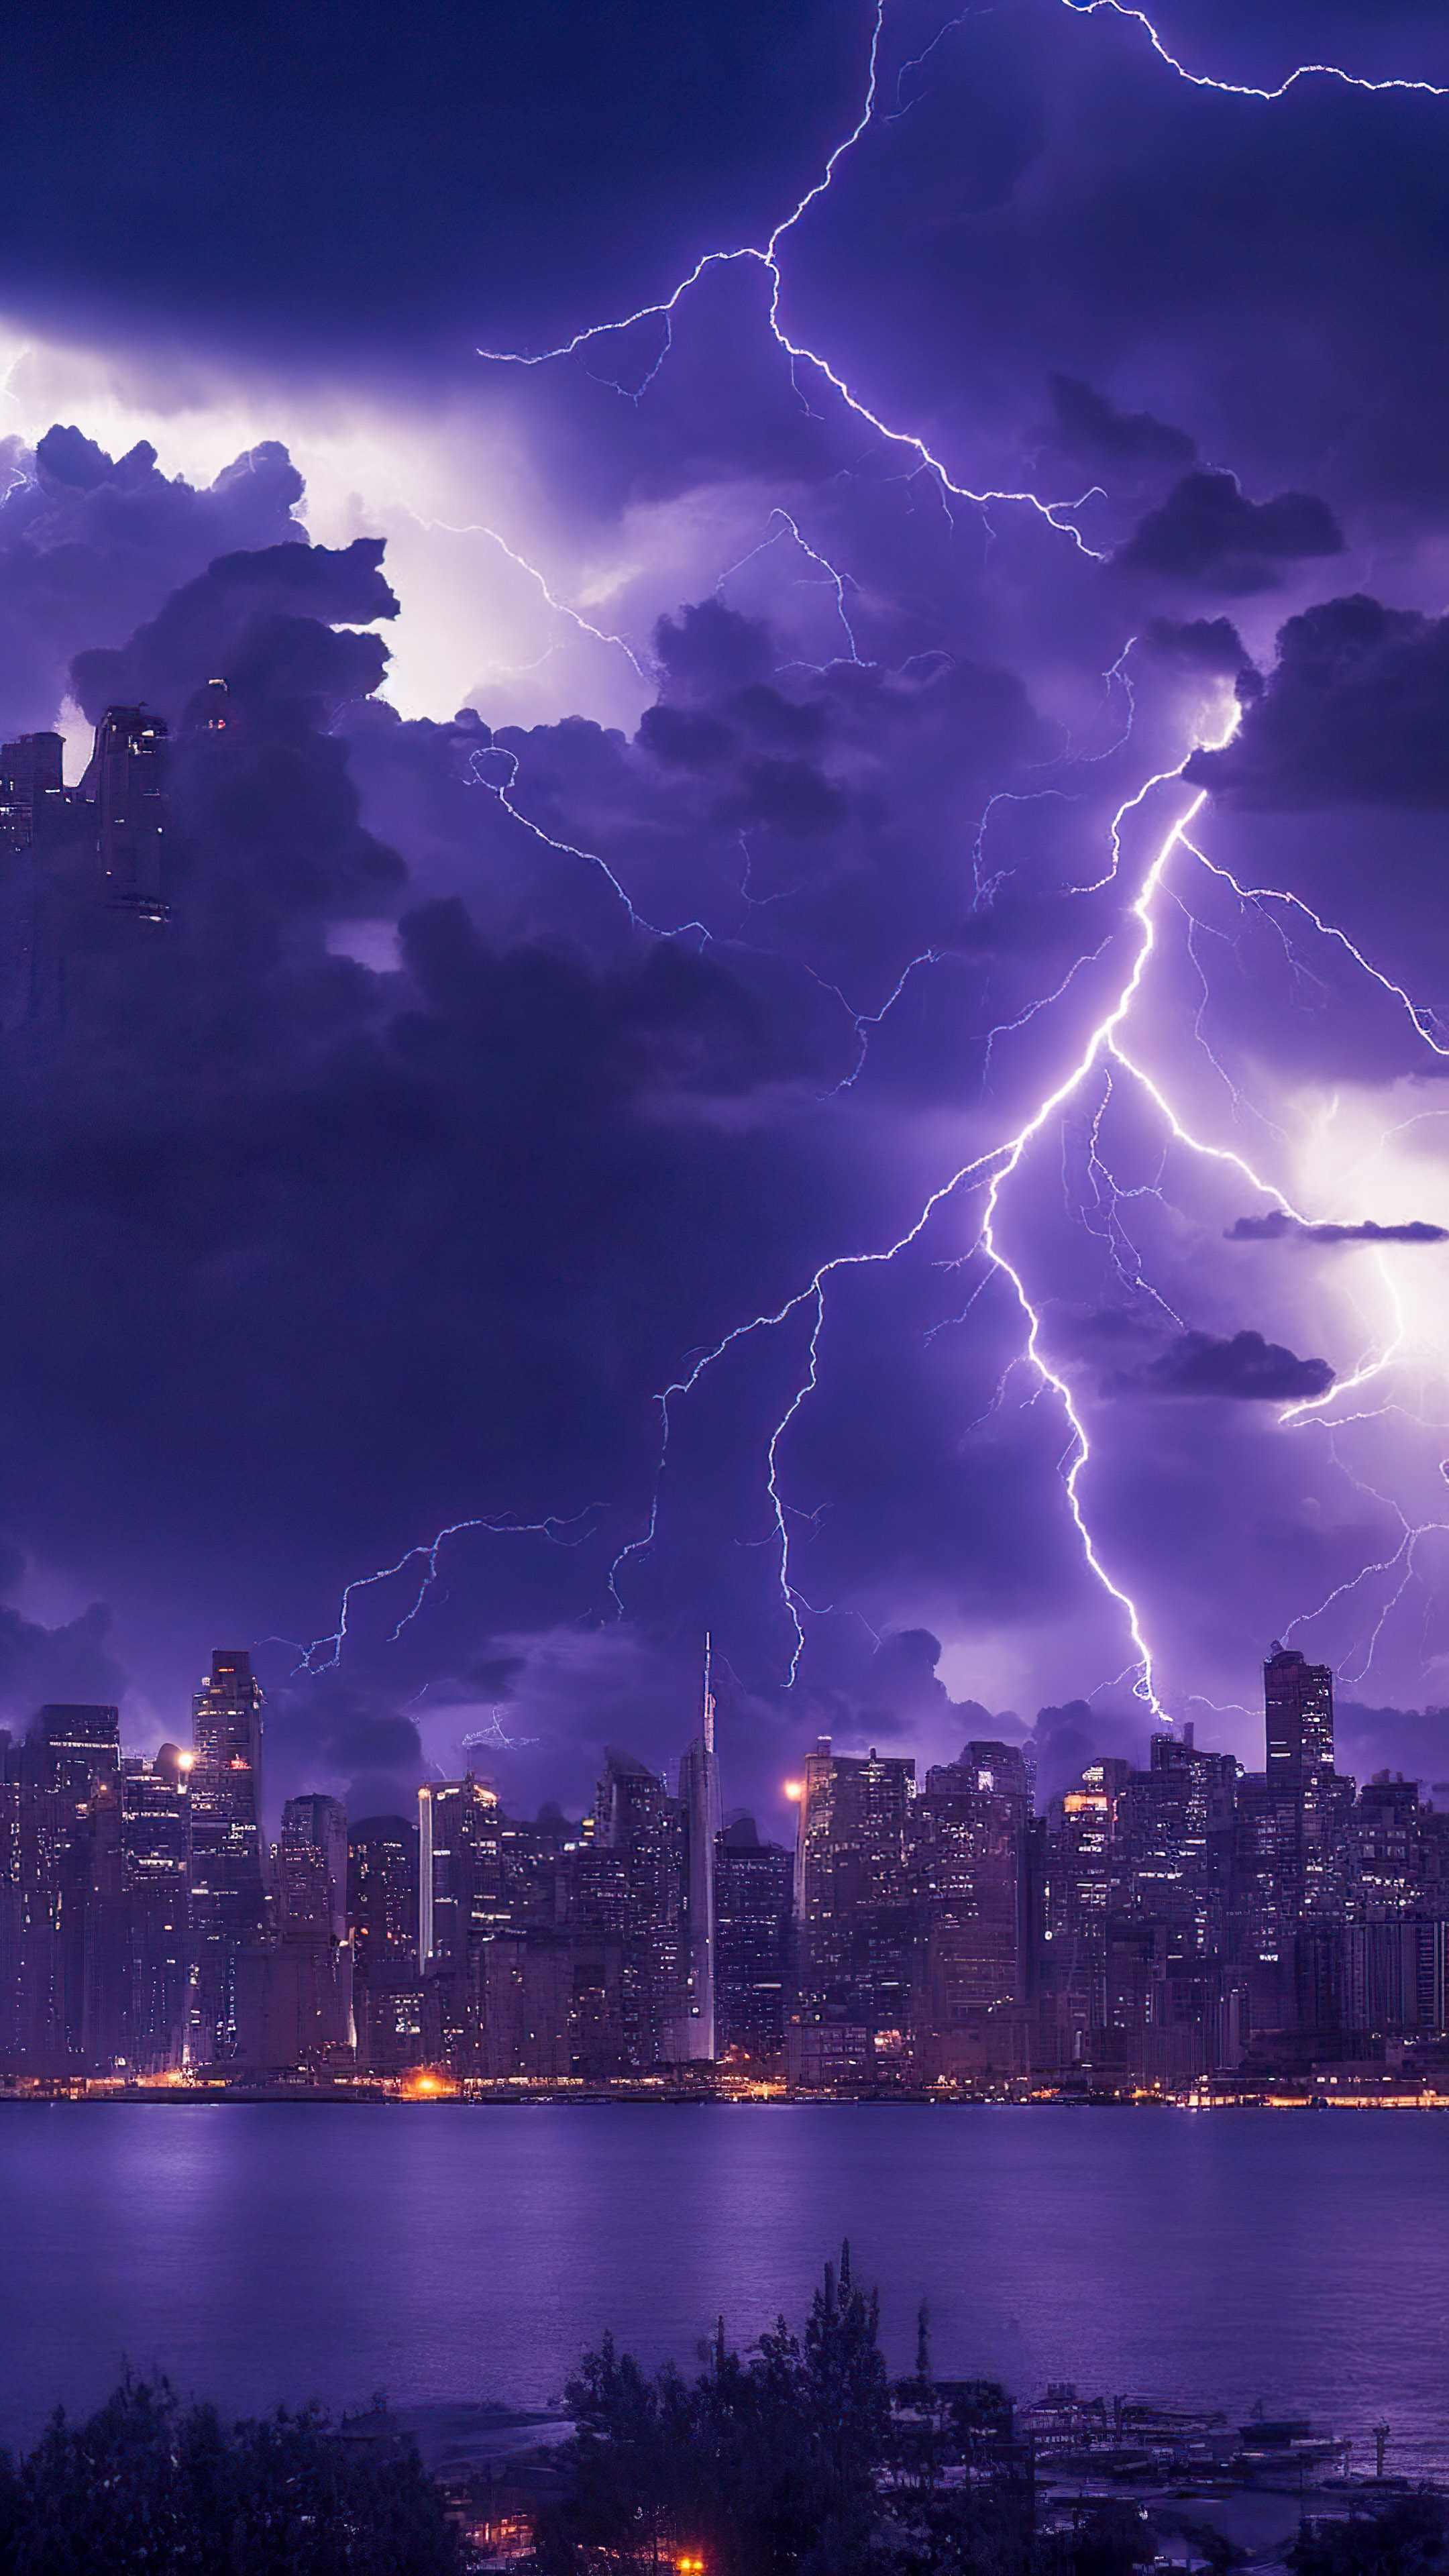 Capturez l’intensité du drame de la nature avec notre fond d’écran de ciel nocturne, mettant en scène un orage sur un horizon de ville, avec des éclairs électrisants.